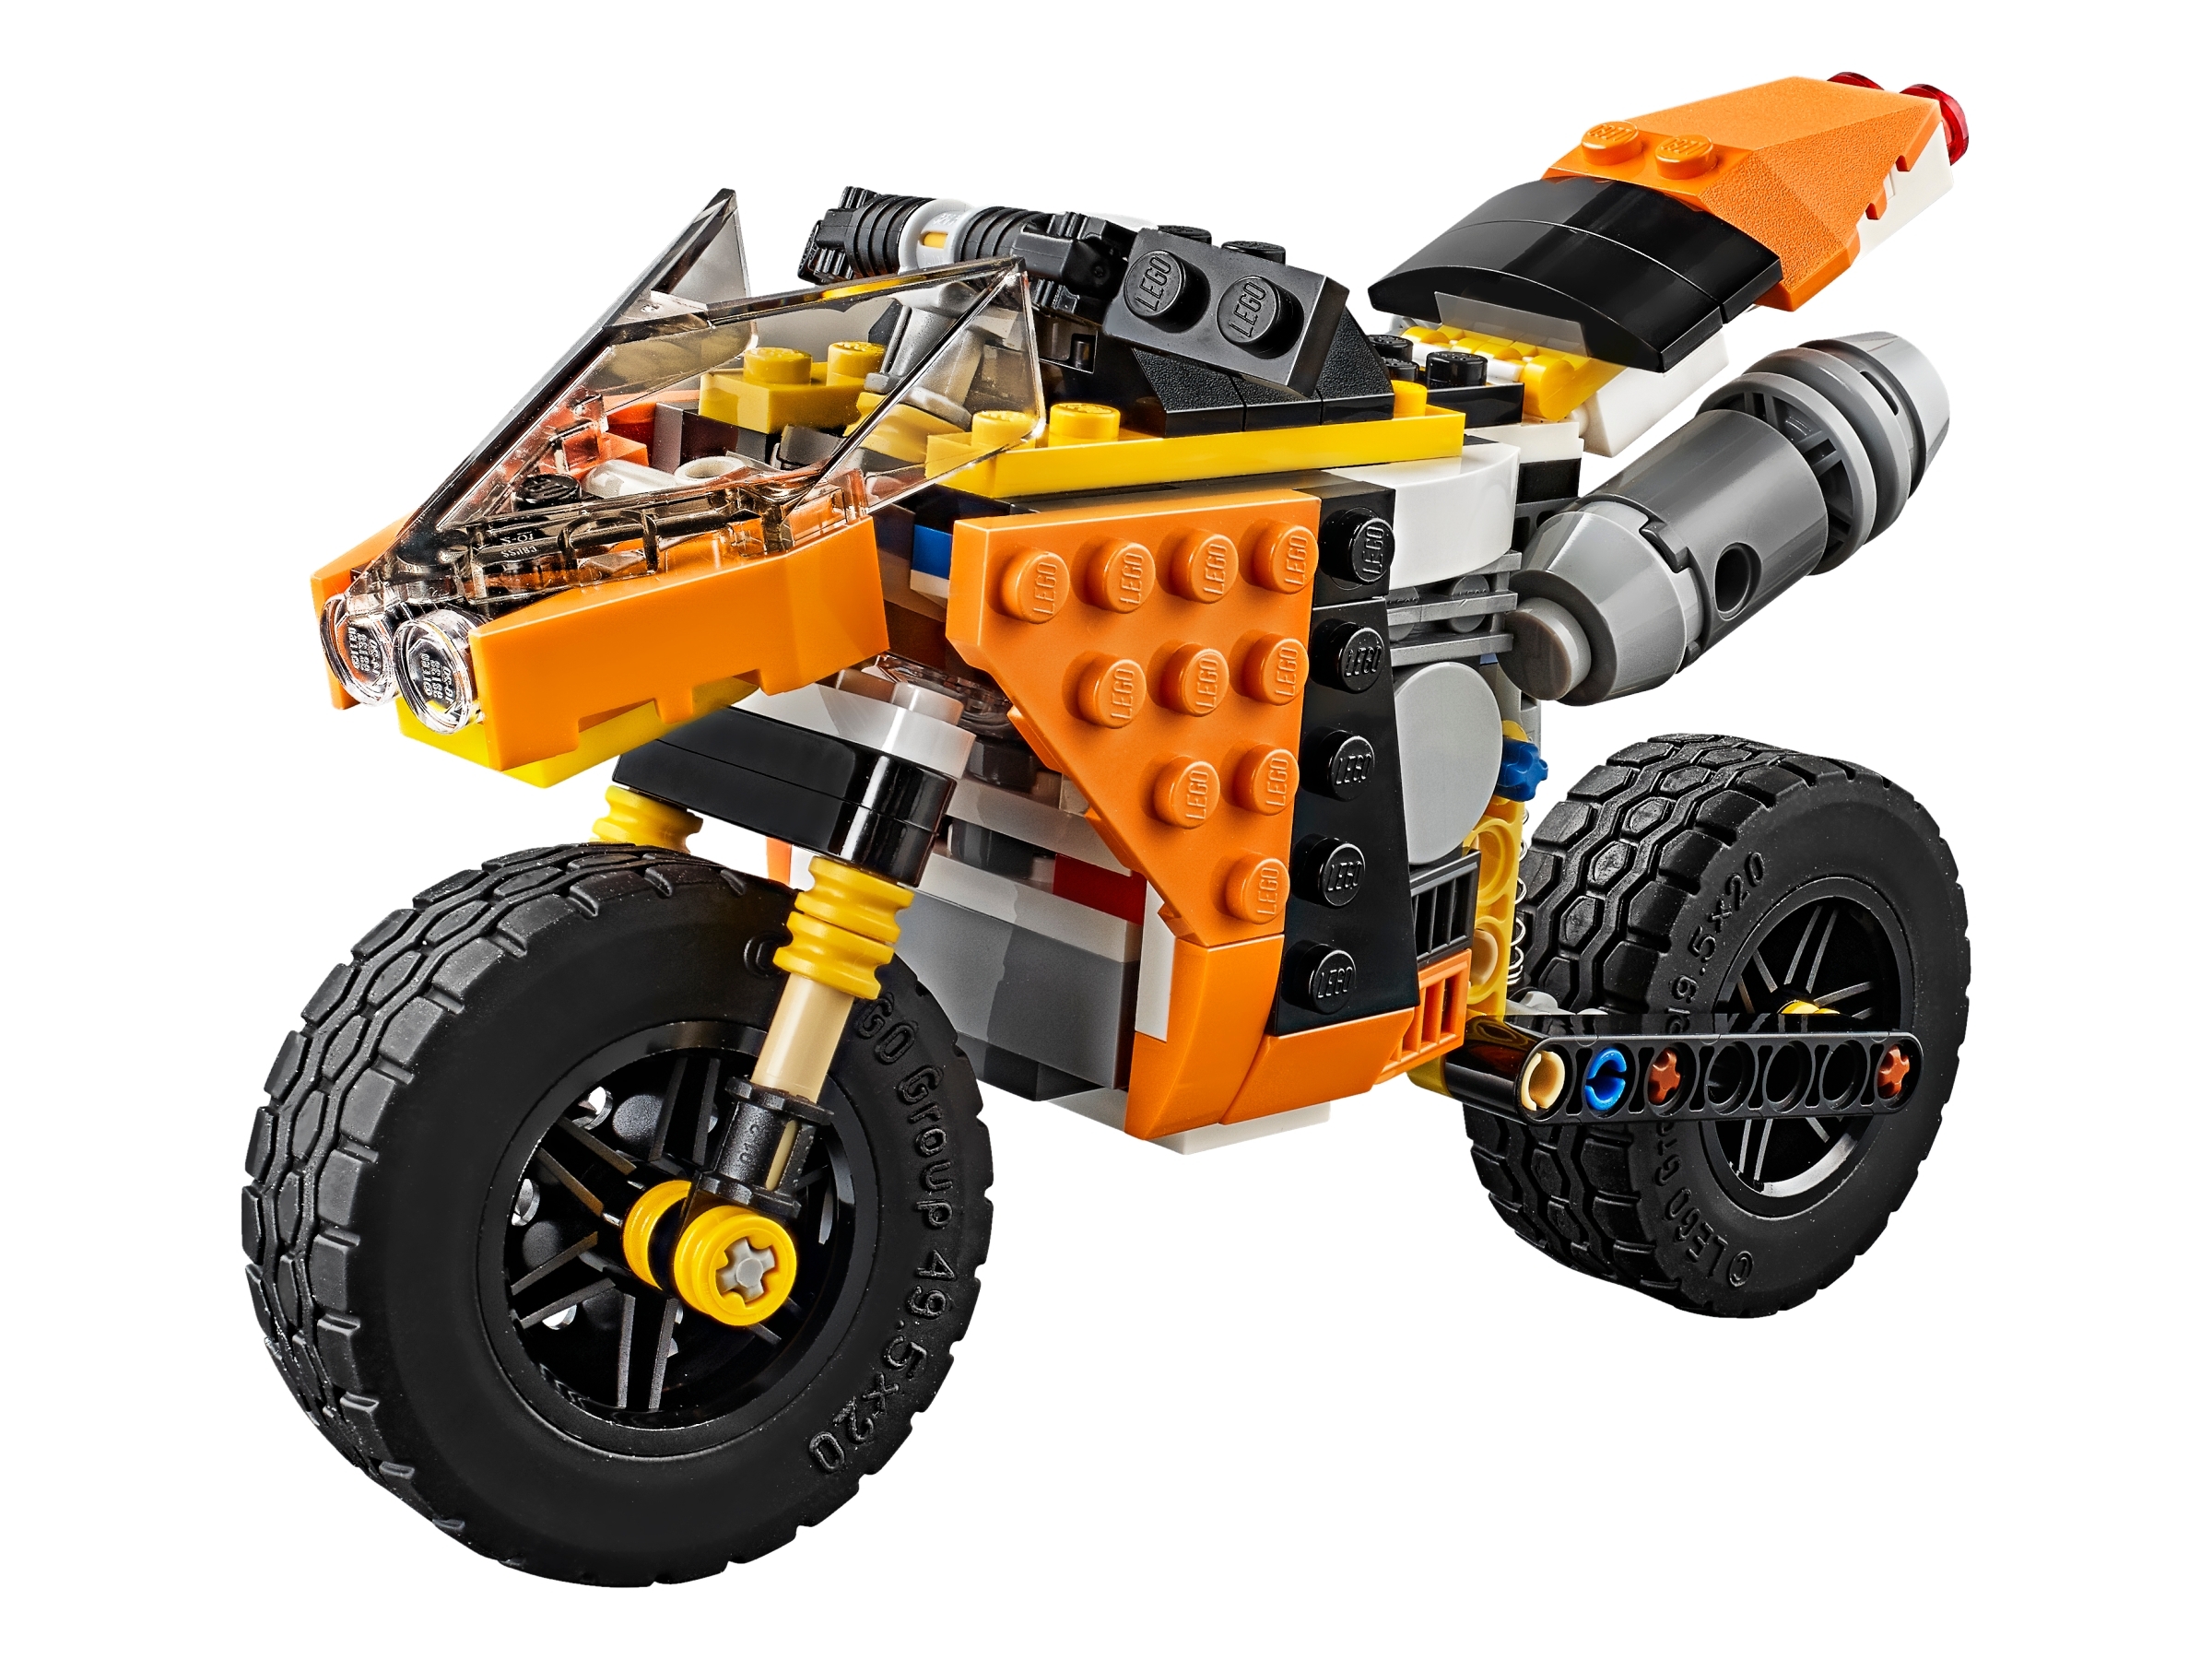 La moto orange 31059 | Creator 3-en-1 | Boutique LEGO® officielle BE